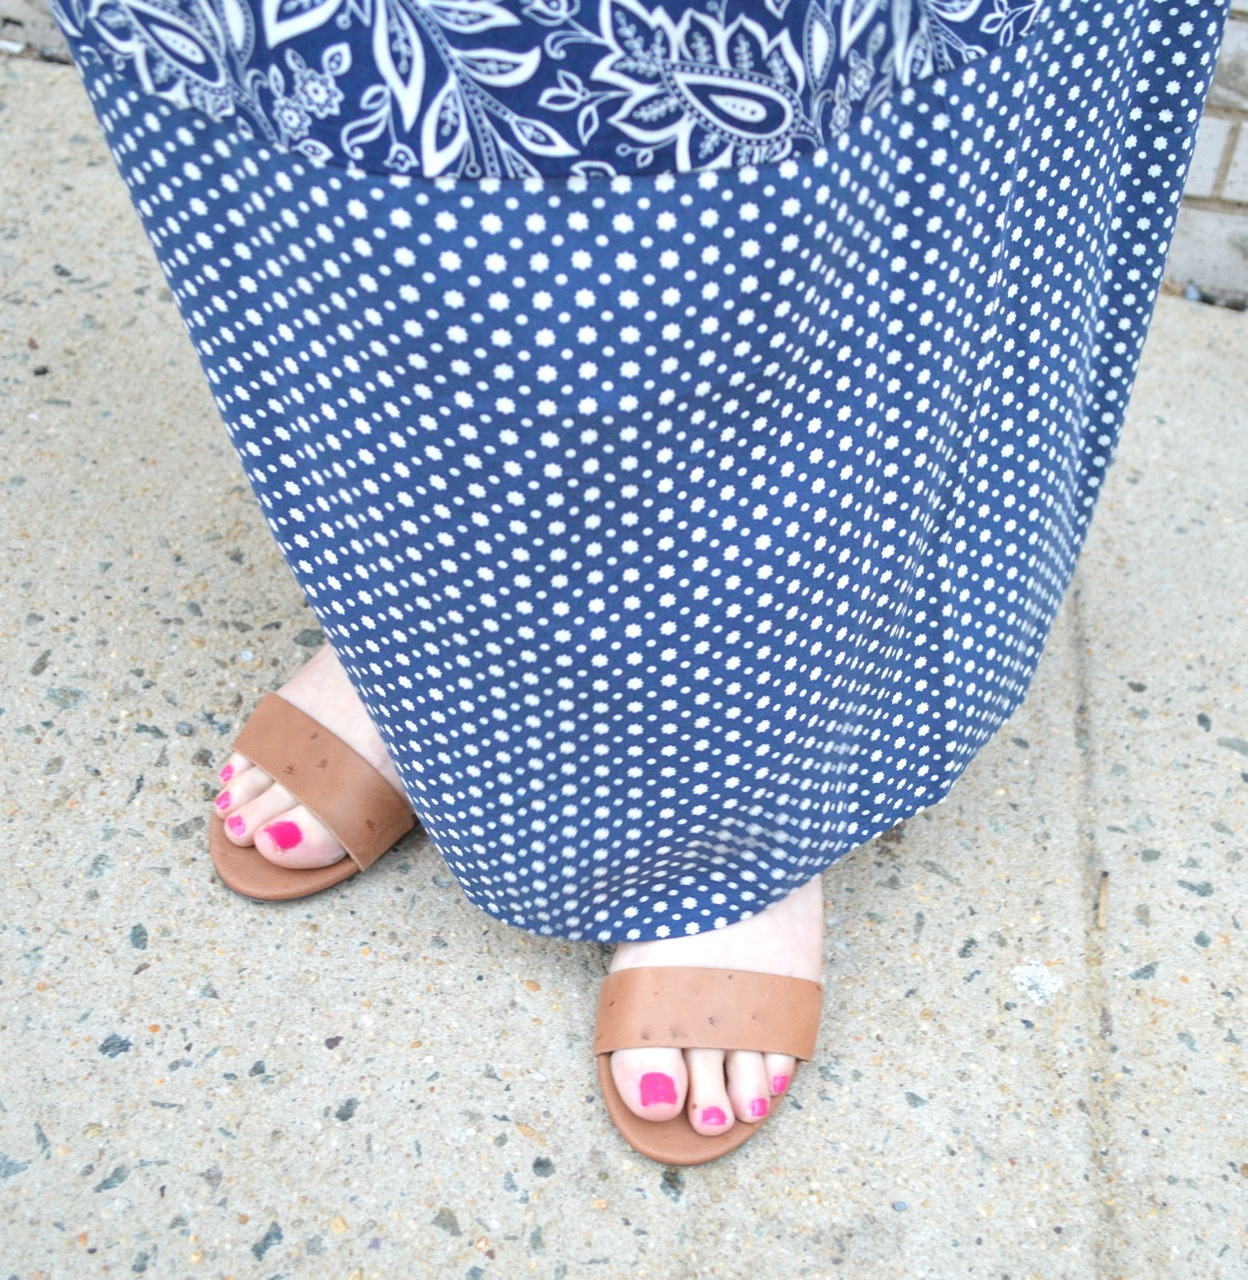 Maxi Dress + Sandals